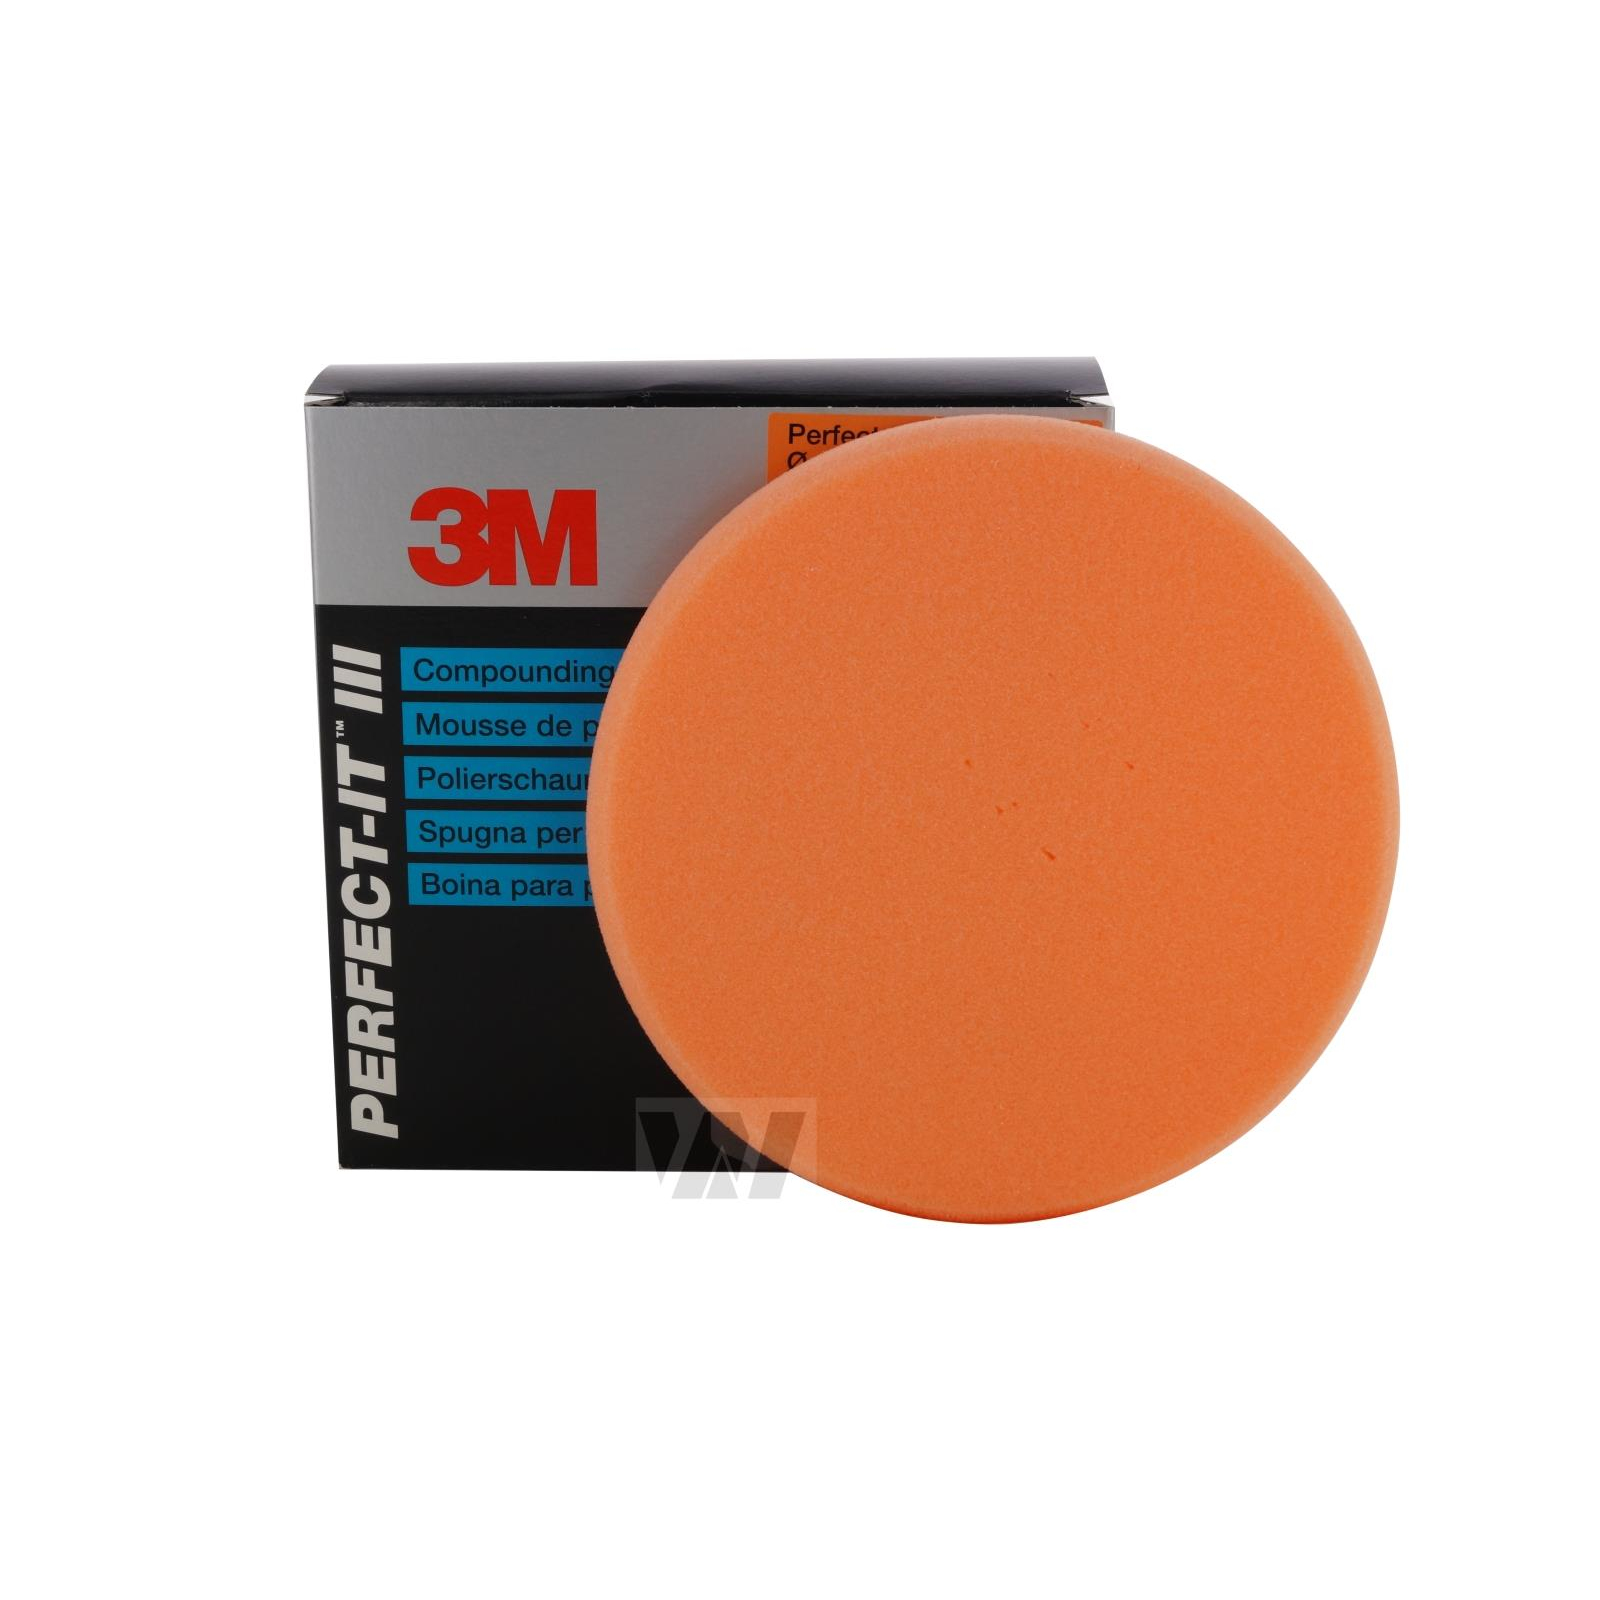 3M Perfect-it III Polierpad orange Durchmesser 75mm 4er Set